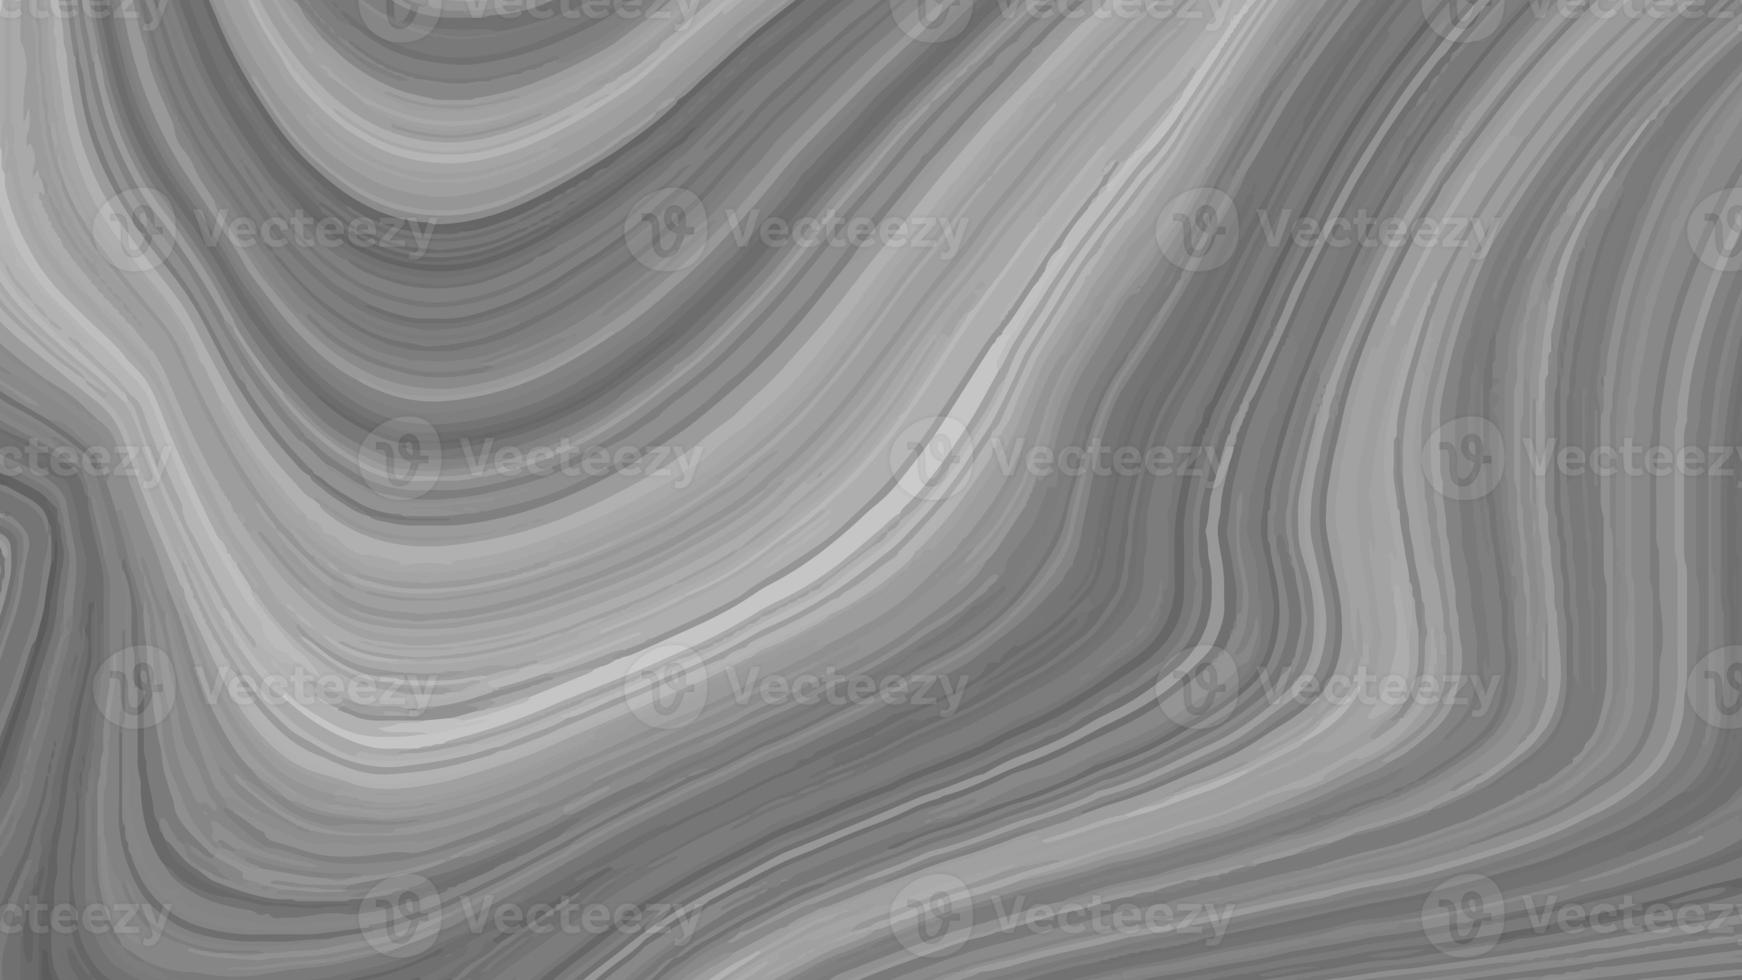 beau dessin avec les divorces et lignes ondulées dans les tons gris. texture liquide argentée. surface métallique argentée. texture abstraite en marbre argenté. fond de marbre gris noir abstrait. fantaisie liquéfier photo